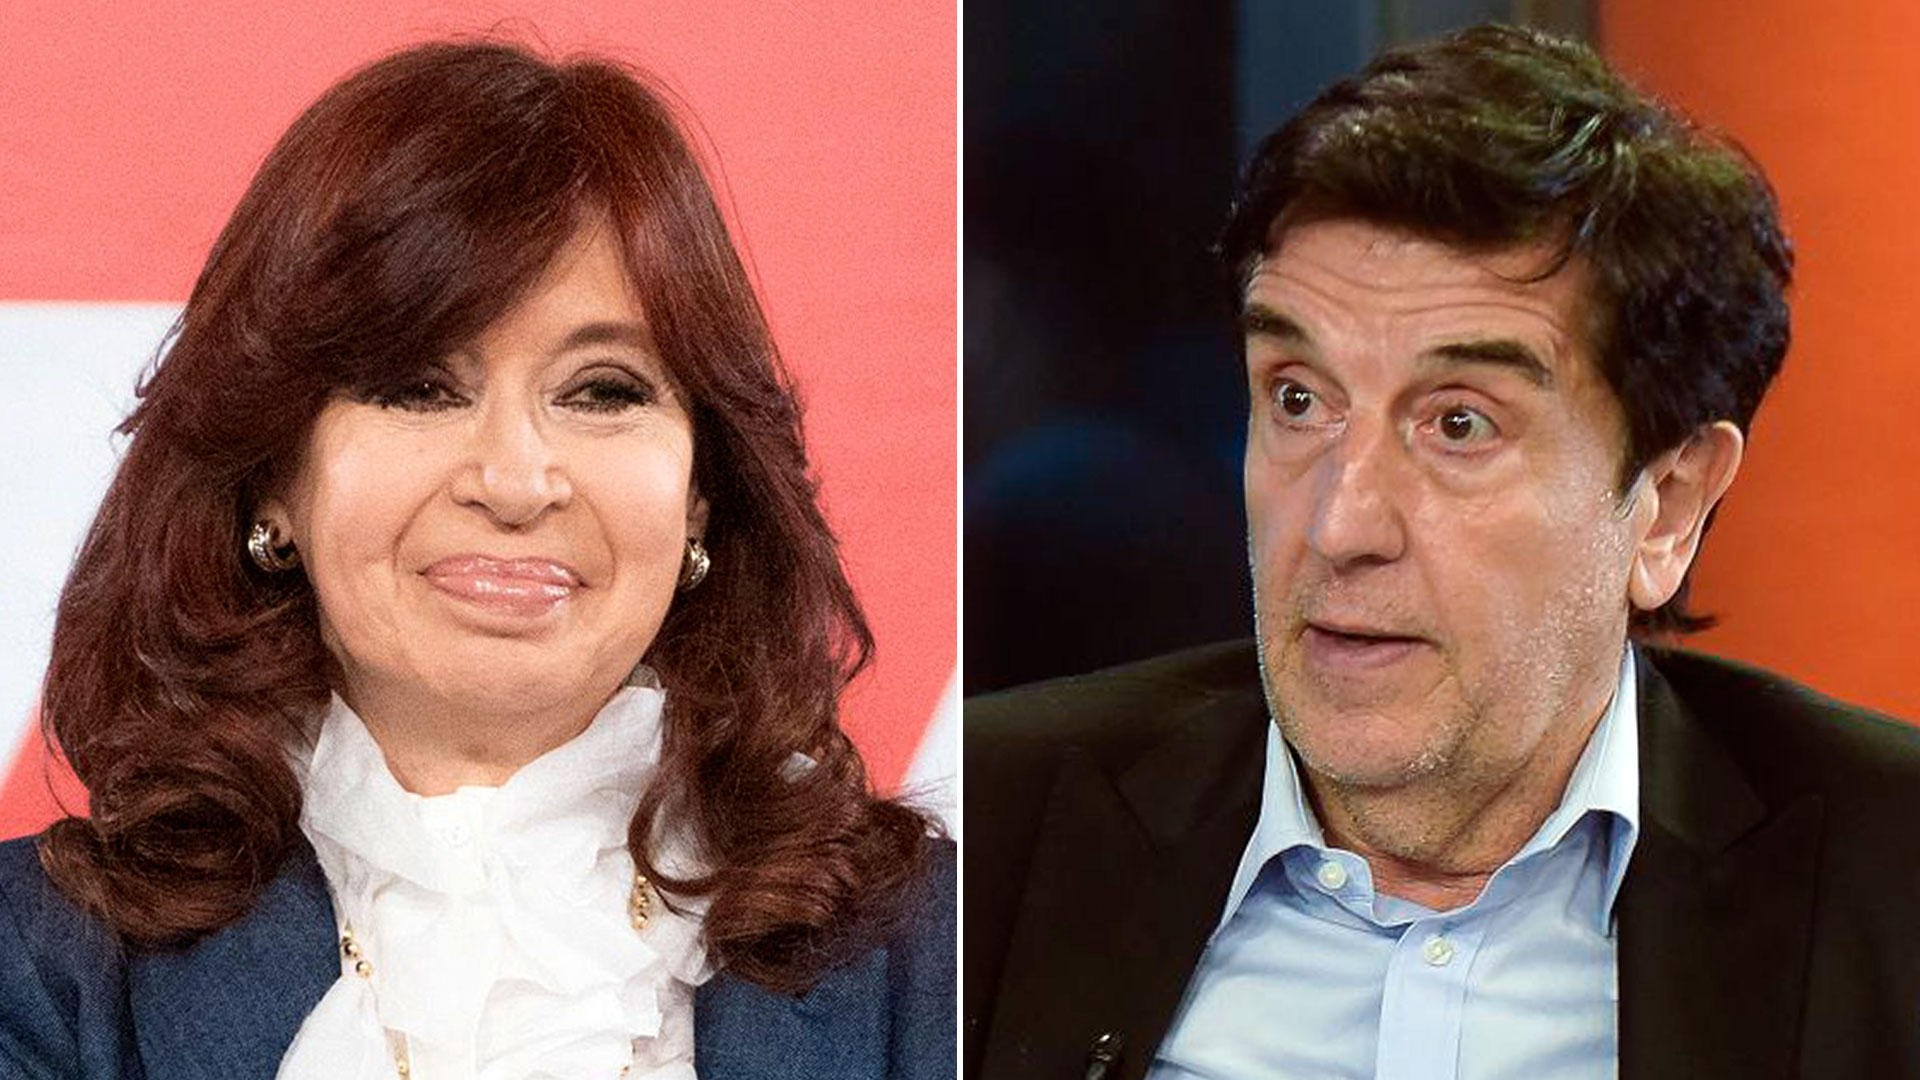 La vicepresidenta Cristina Kirchner y el economista Carlos Melconian